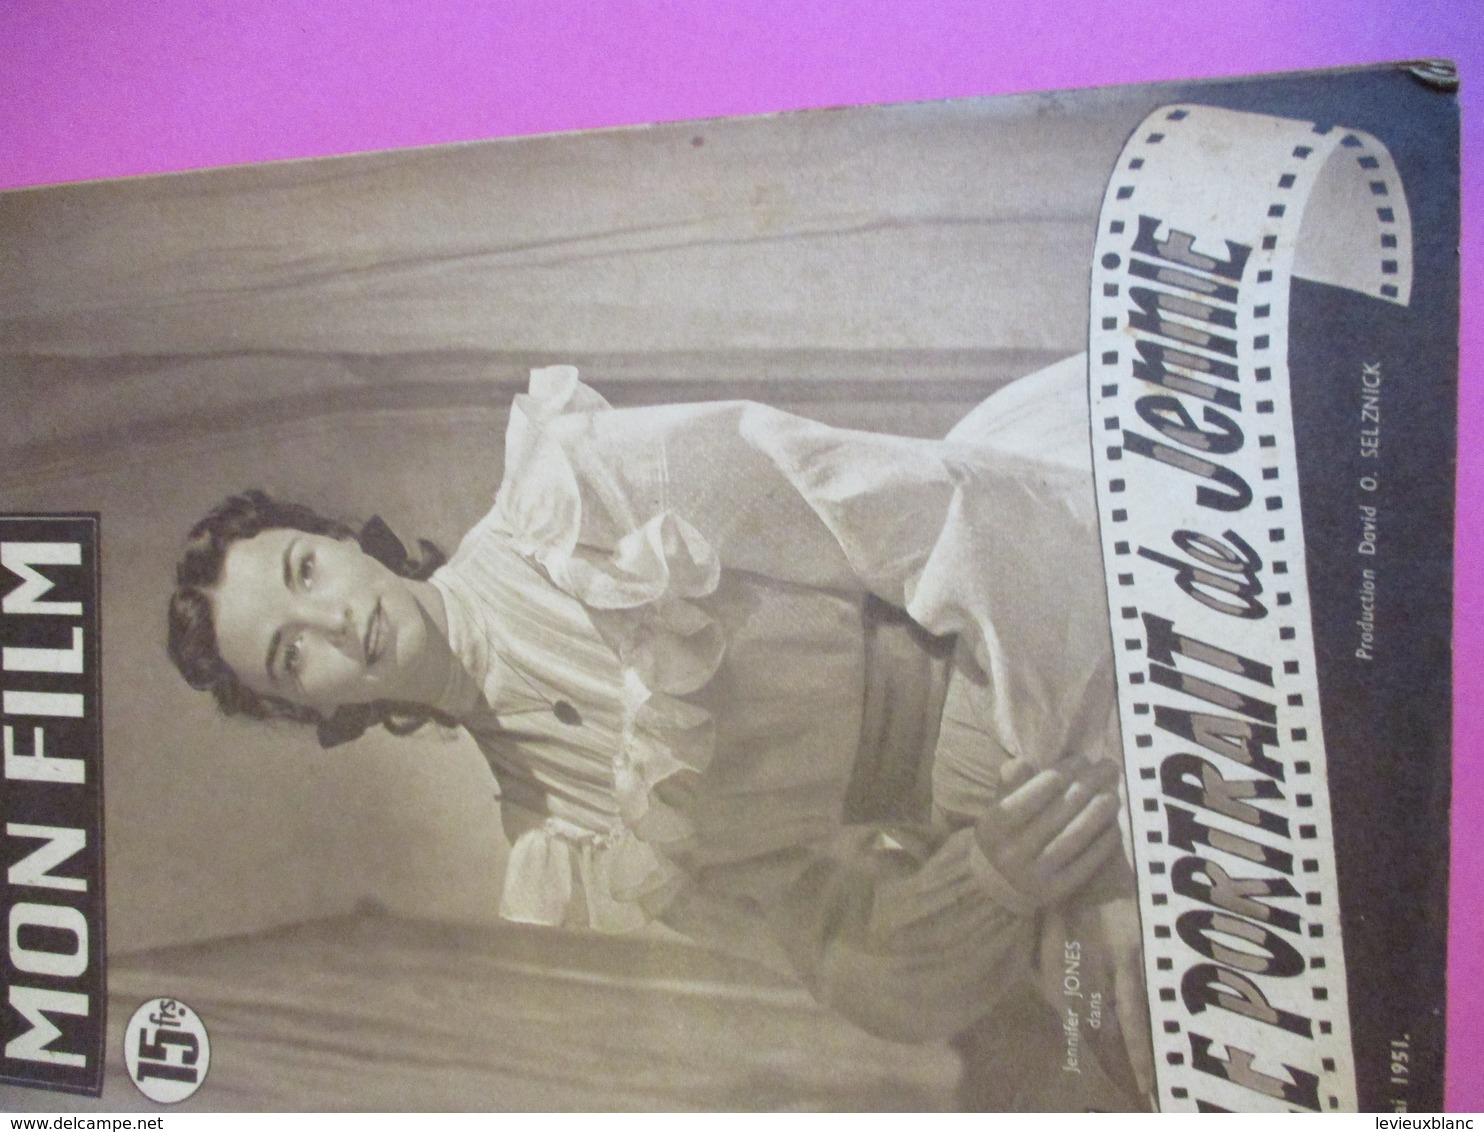 Cinéma/Revue/Mon Film/"Le Portrait De Jennie "/Jennifer JONES, Joseph COTTEN/Prod Selznick/William DIETERLE/1951  CIN101 - Andere & Zonder Classificatie